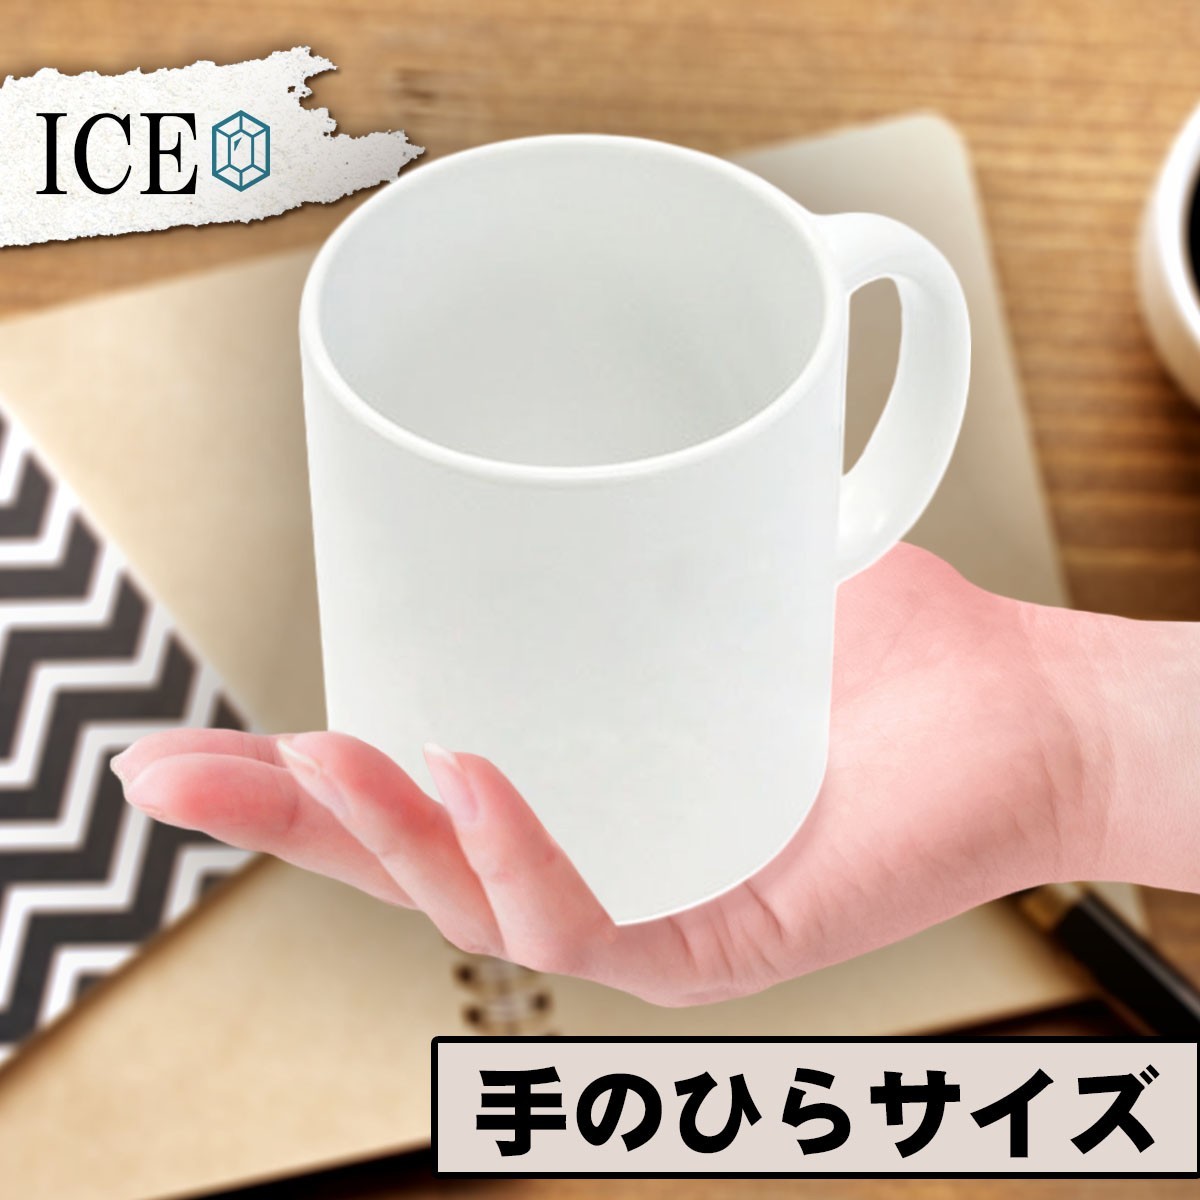 スマートフォン スマホ おもしろ マグカップ コップ 陶器 可愛い かわいい 白 シンプル かわいい カッコイイ シュール 面白い ジョーク ゆ_画像2